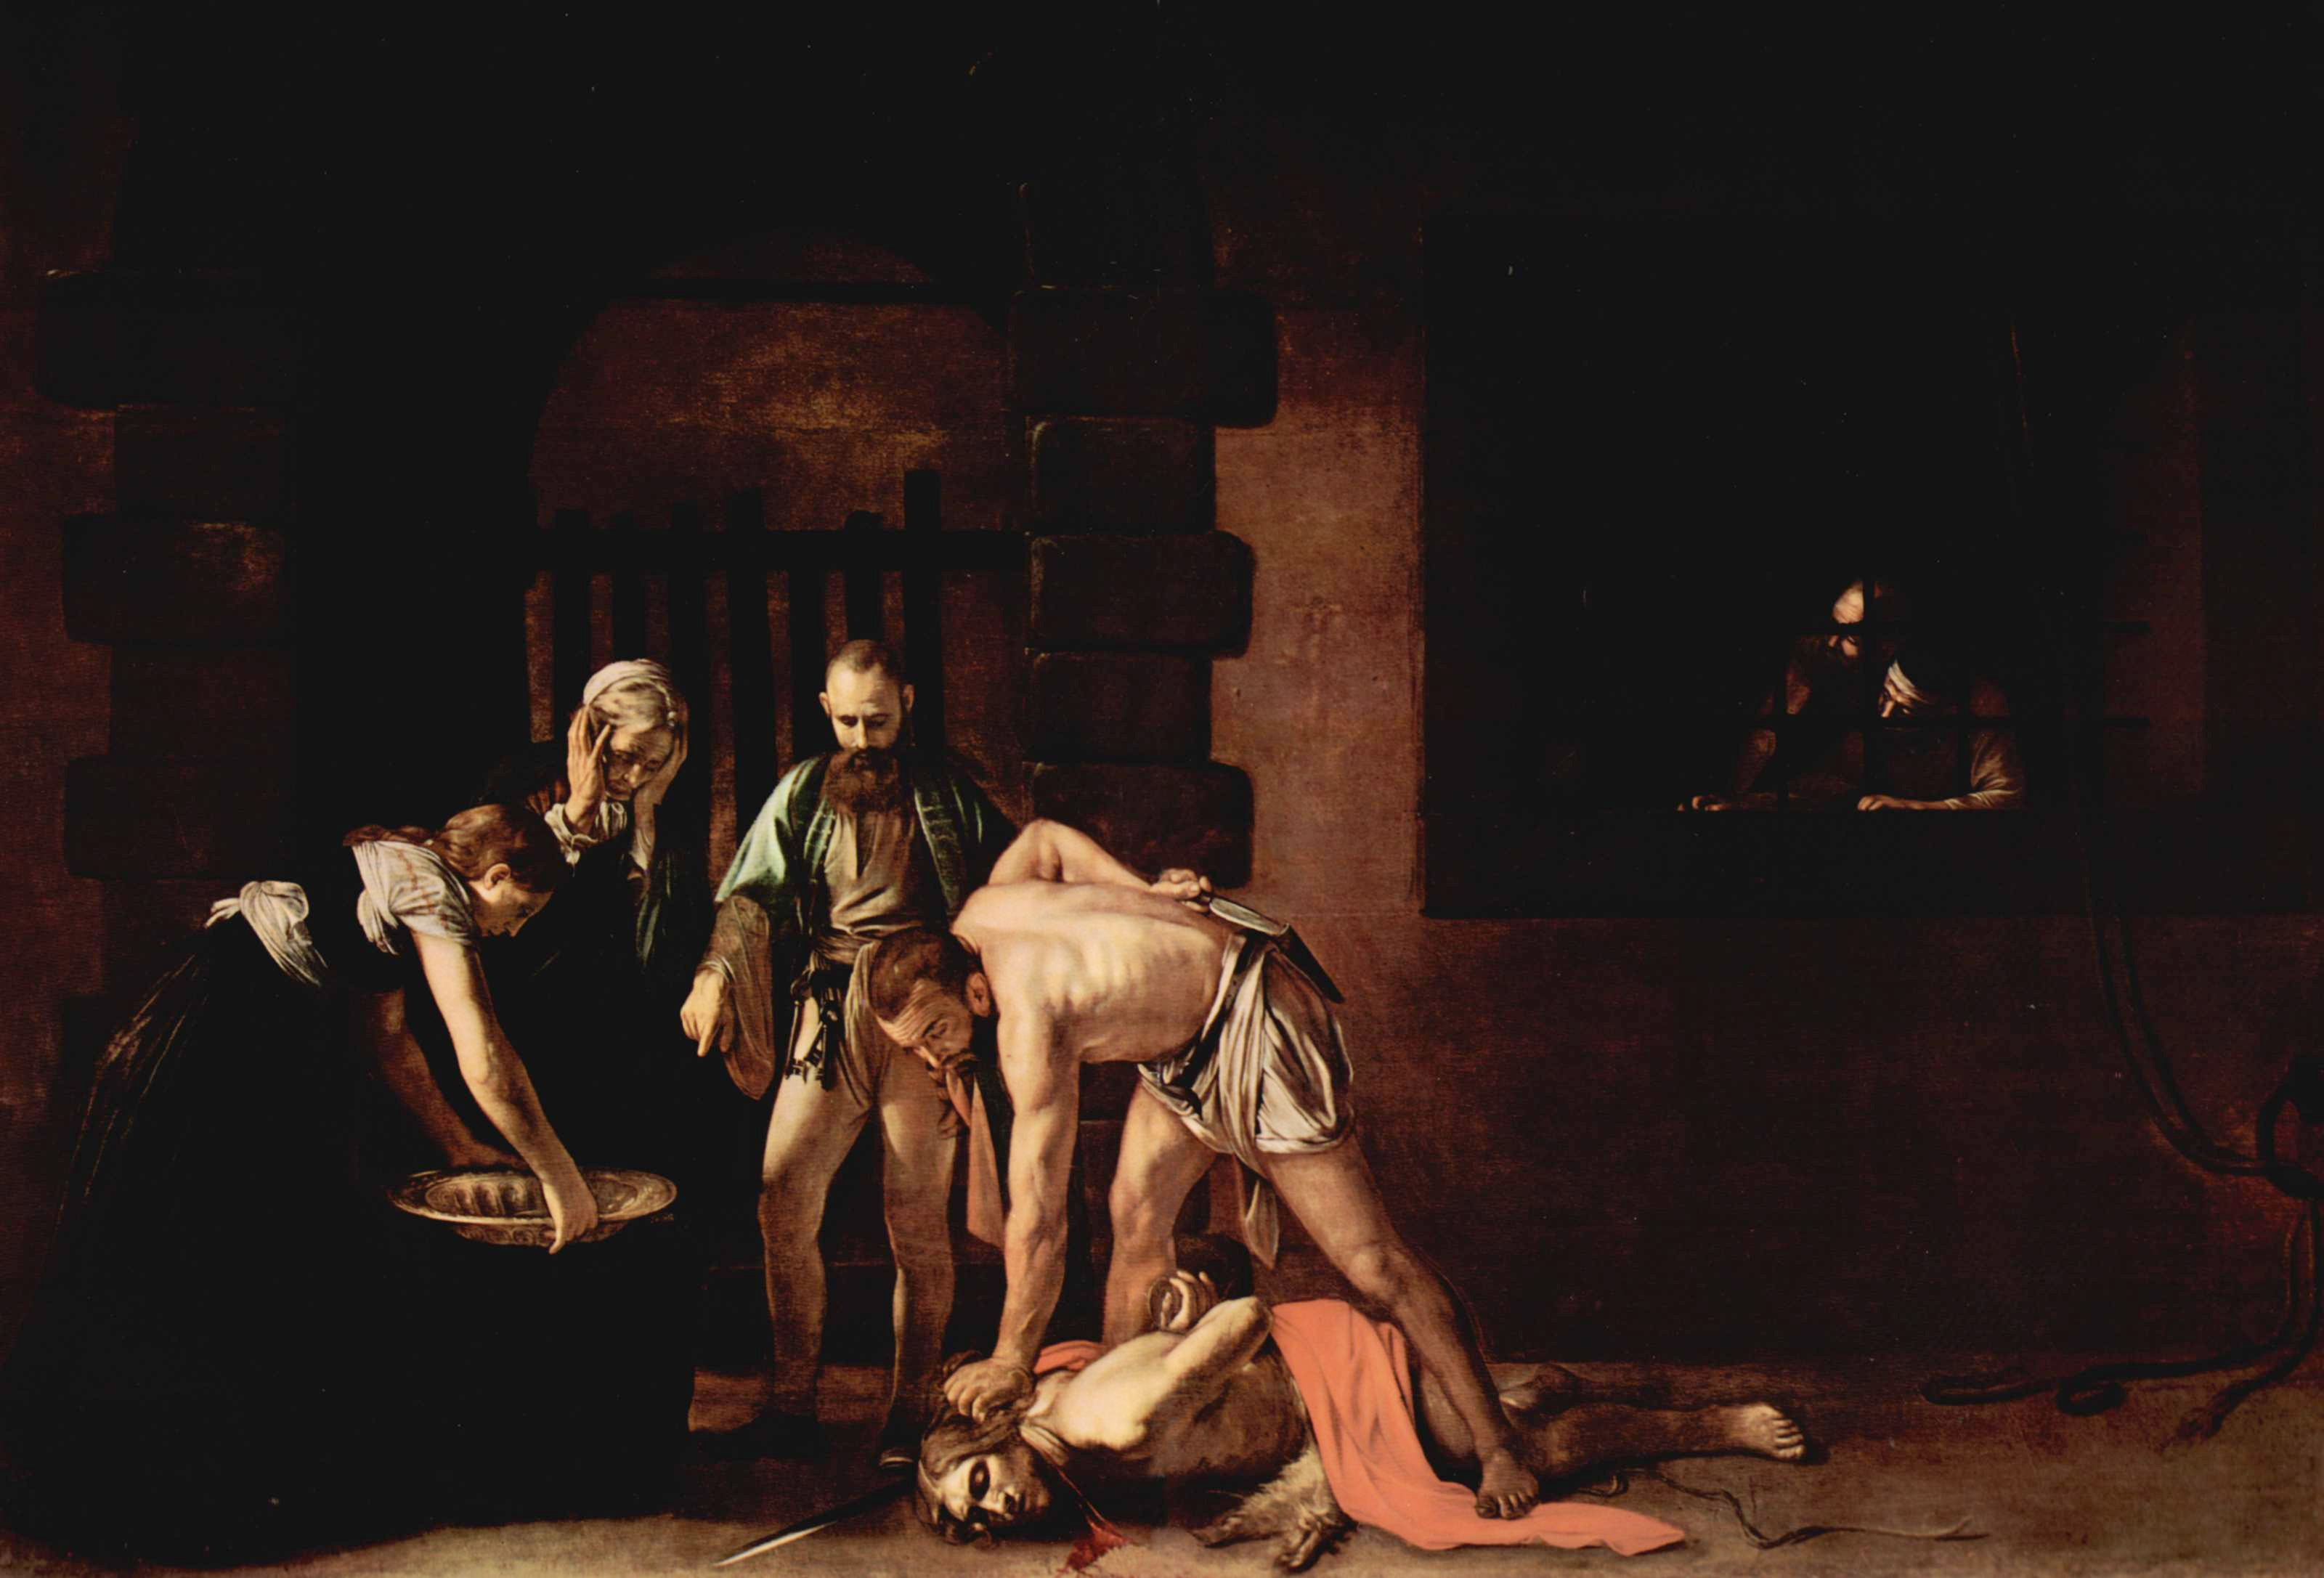 Le Caravage (1571-1610), La Décollation de saint Jean-Baptiste, vers 1608, huile sur toile, 361 x 520 cm, La Valette, Cathédrale Saint-Jean de La Valette © DR